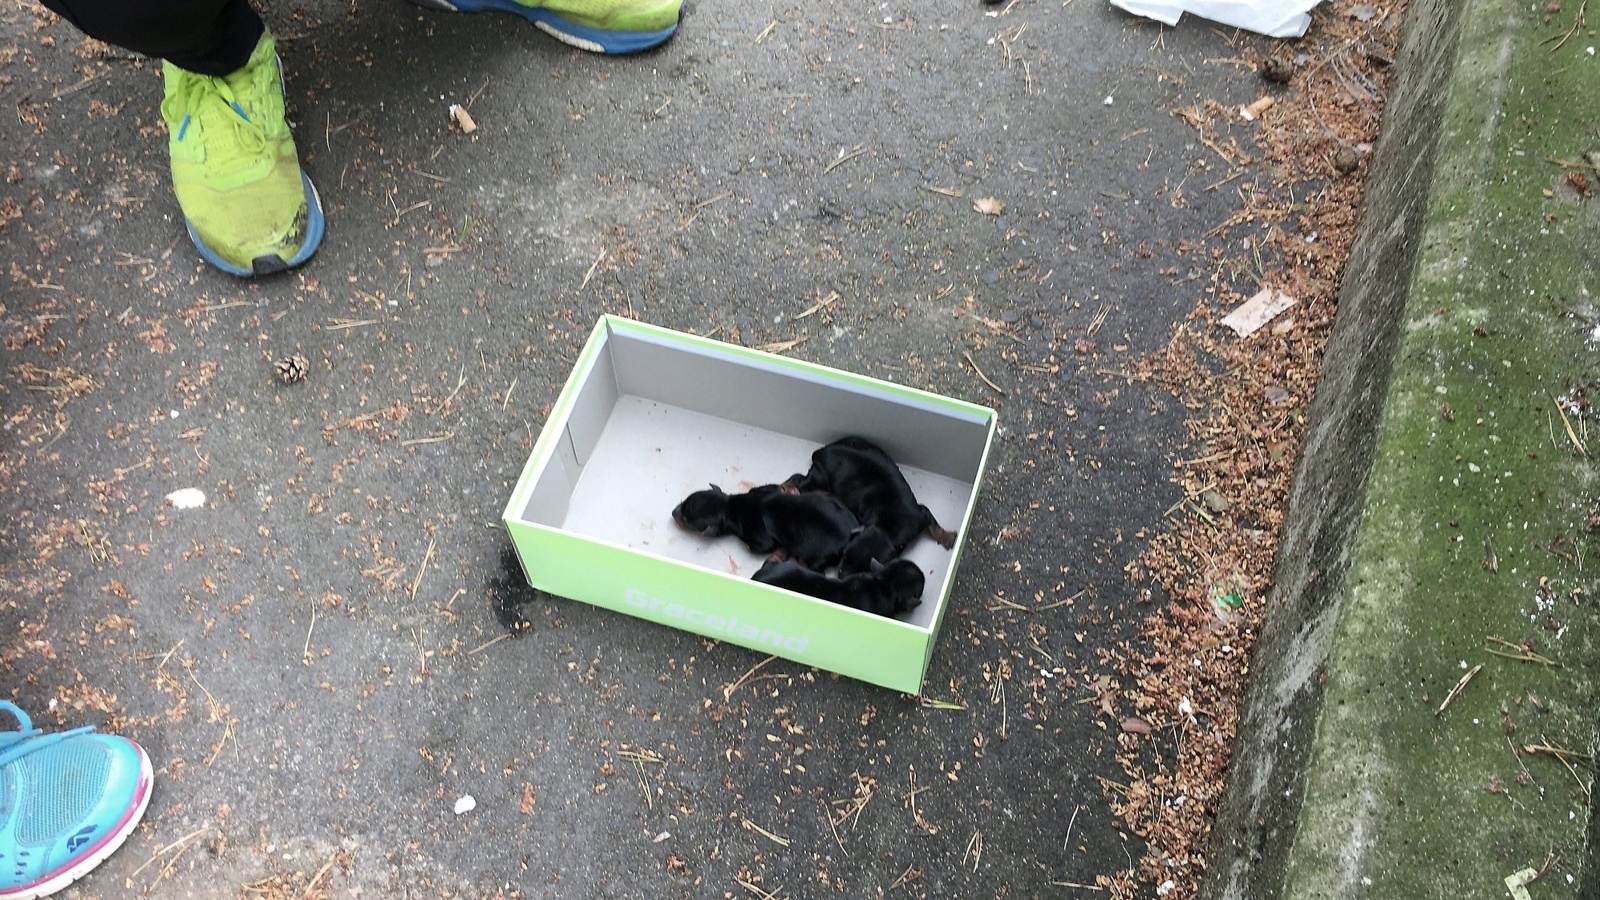 Hundvalparna hittades på asfalten, invid den kartong de sedan lades tillbaka i. Foto: Ola Löfvén